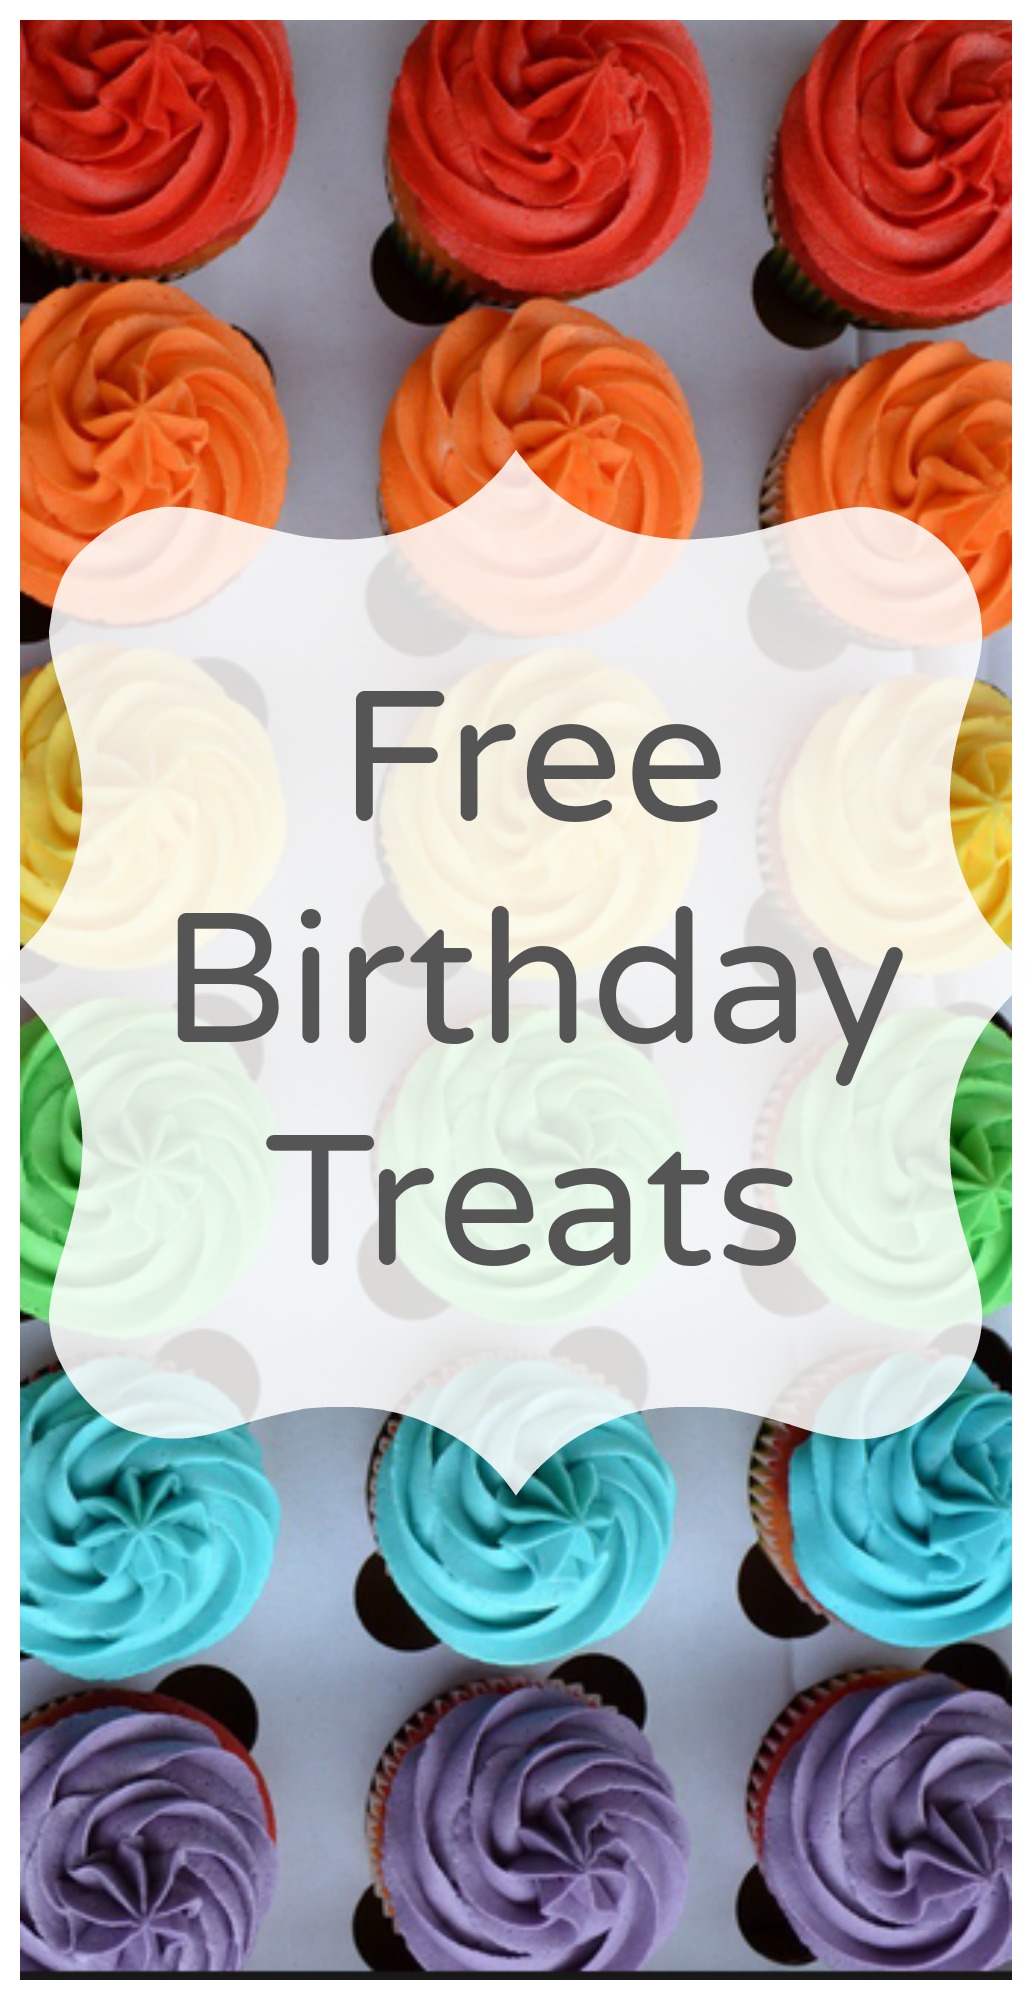 Free Birthday Treats